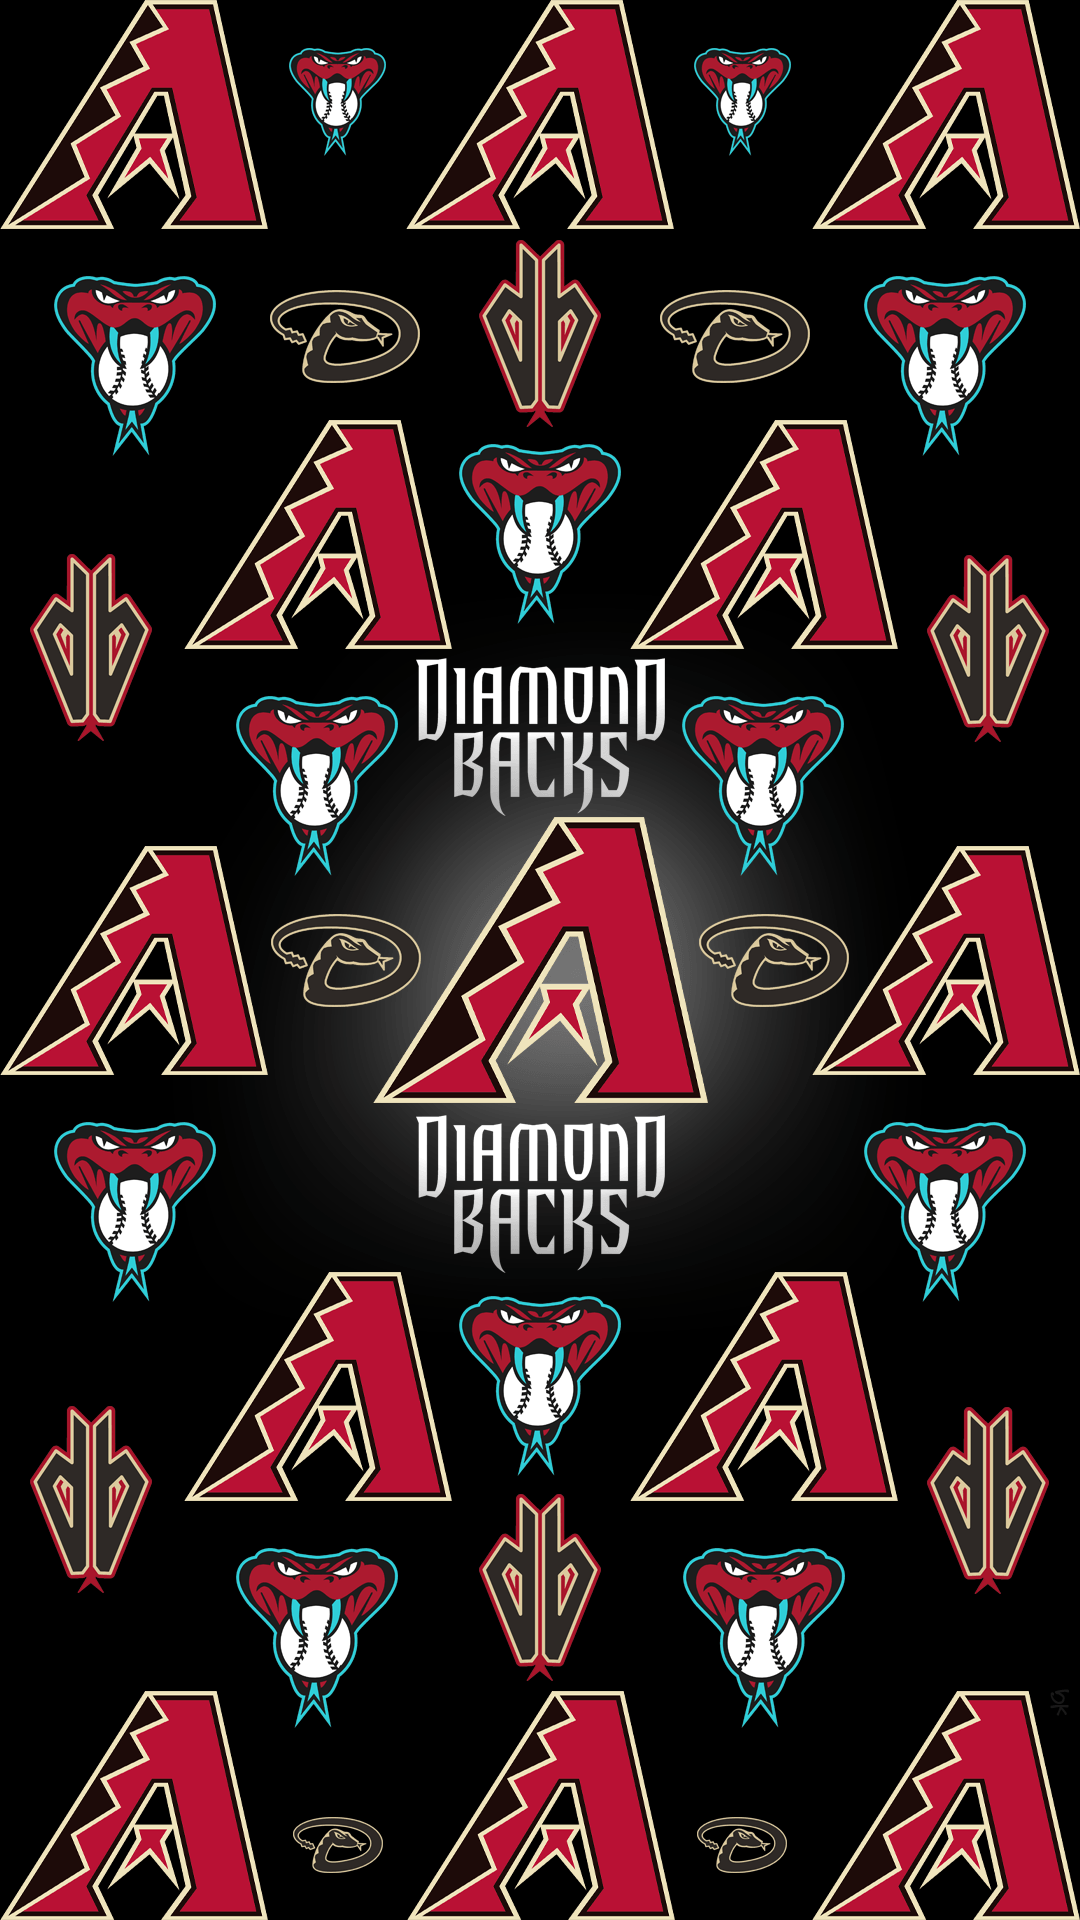 Arizona DiamonDBacks. Arizona Diamondbacks. Arizona